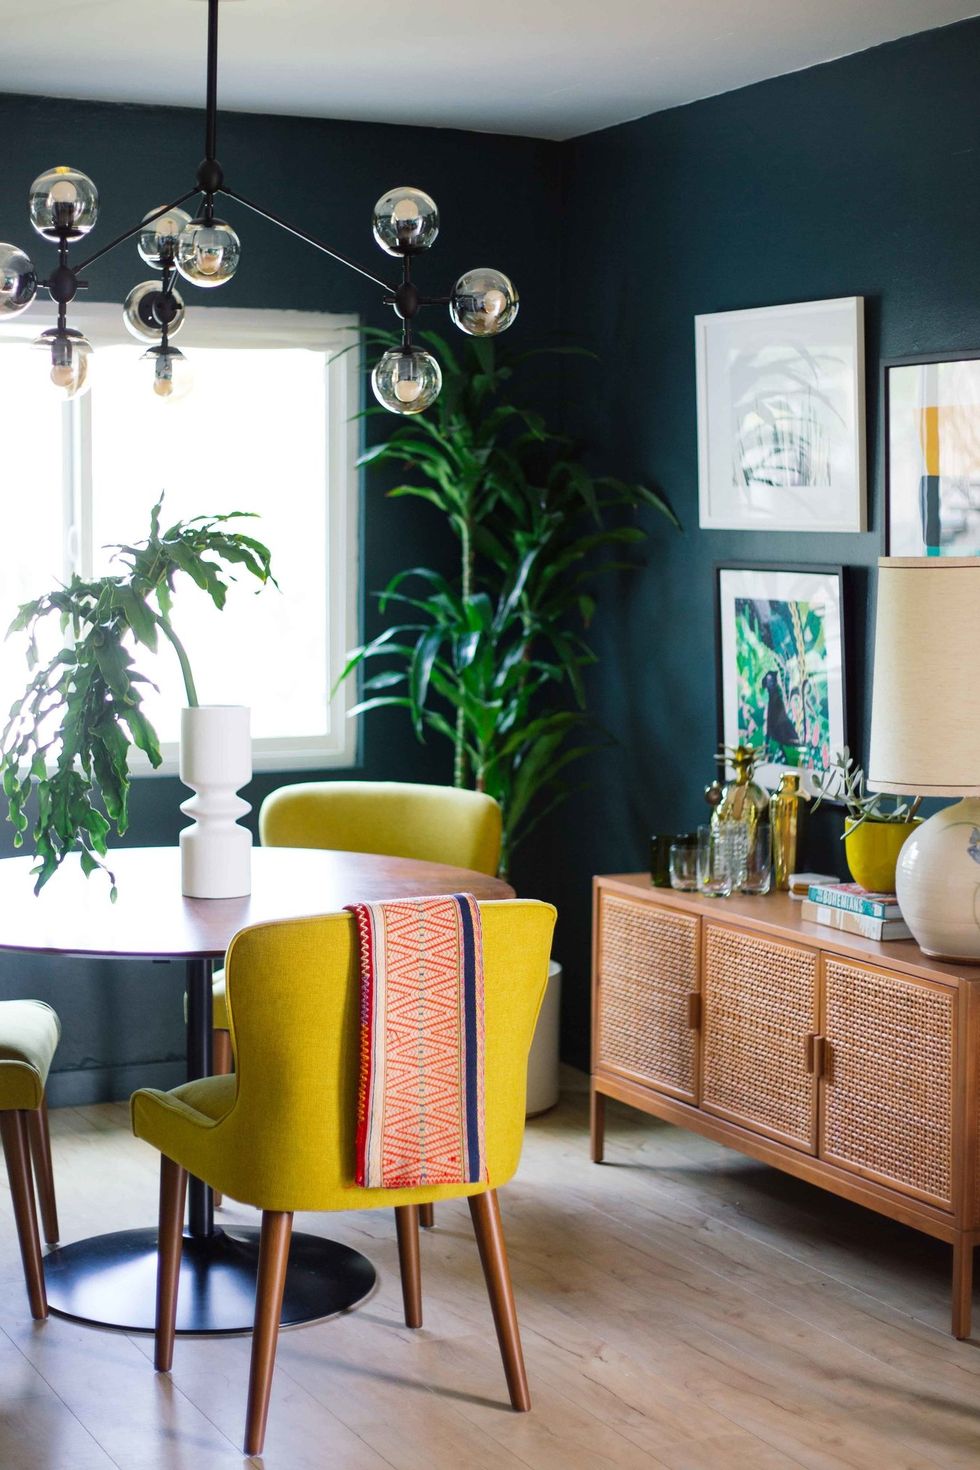 hình ảnh phòng ăn với tường sơn màu xanh mòng két, bàn ăn tròn, ghế vàng, đèn thả thủy tinh, tủ gỗ, tranh treo tường, cây xanh trang trí